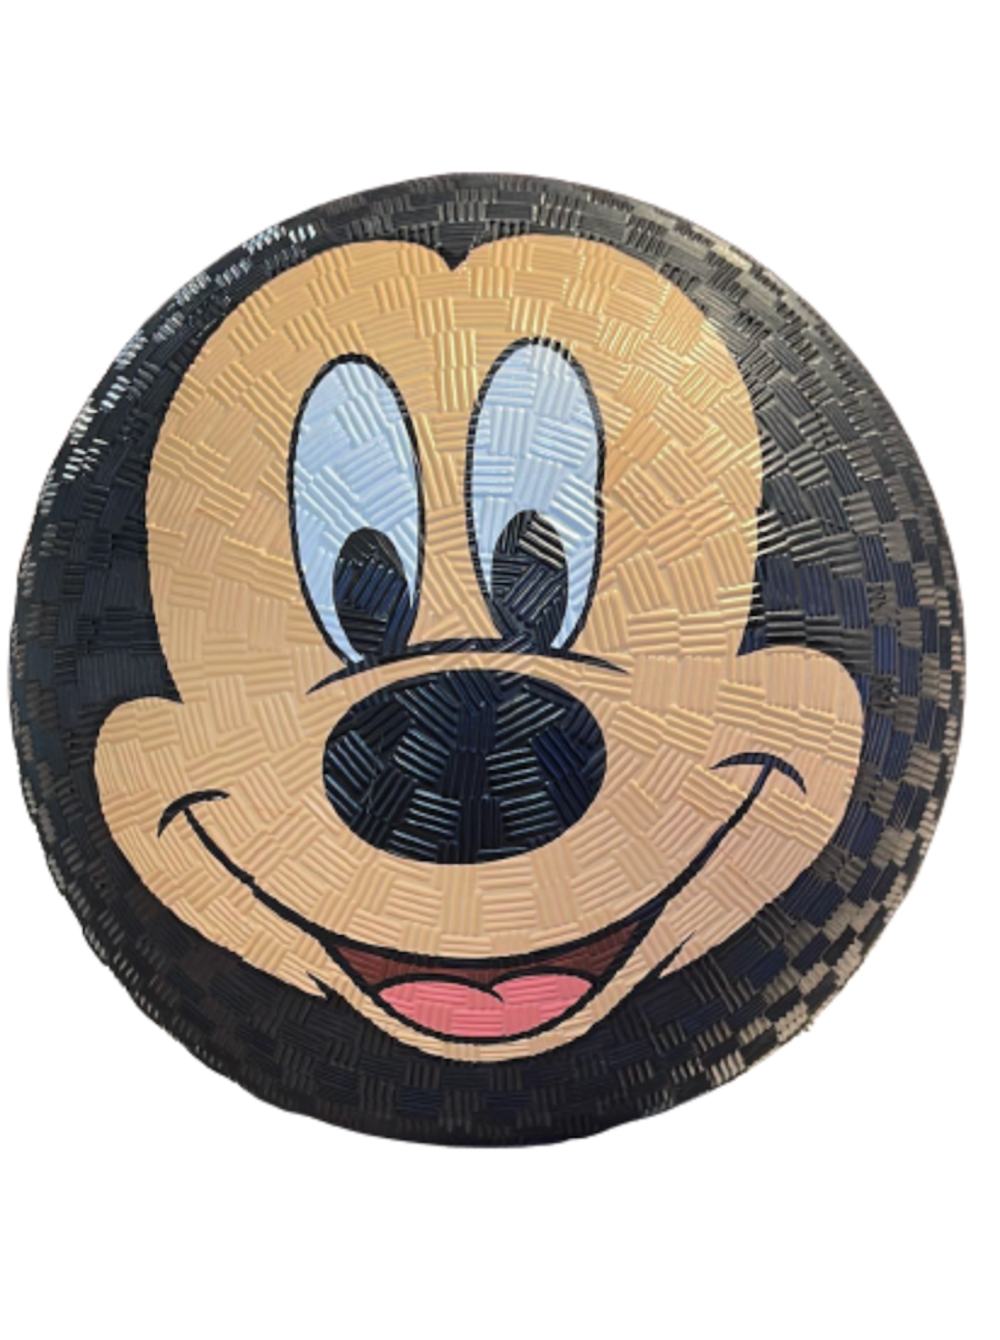 Disney Parks Mickey Face Sports Ball New